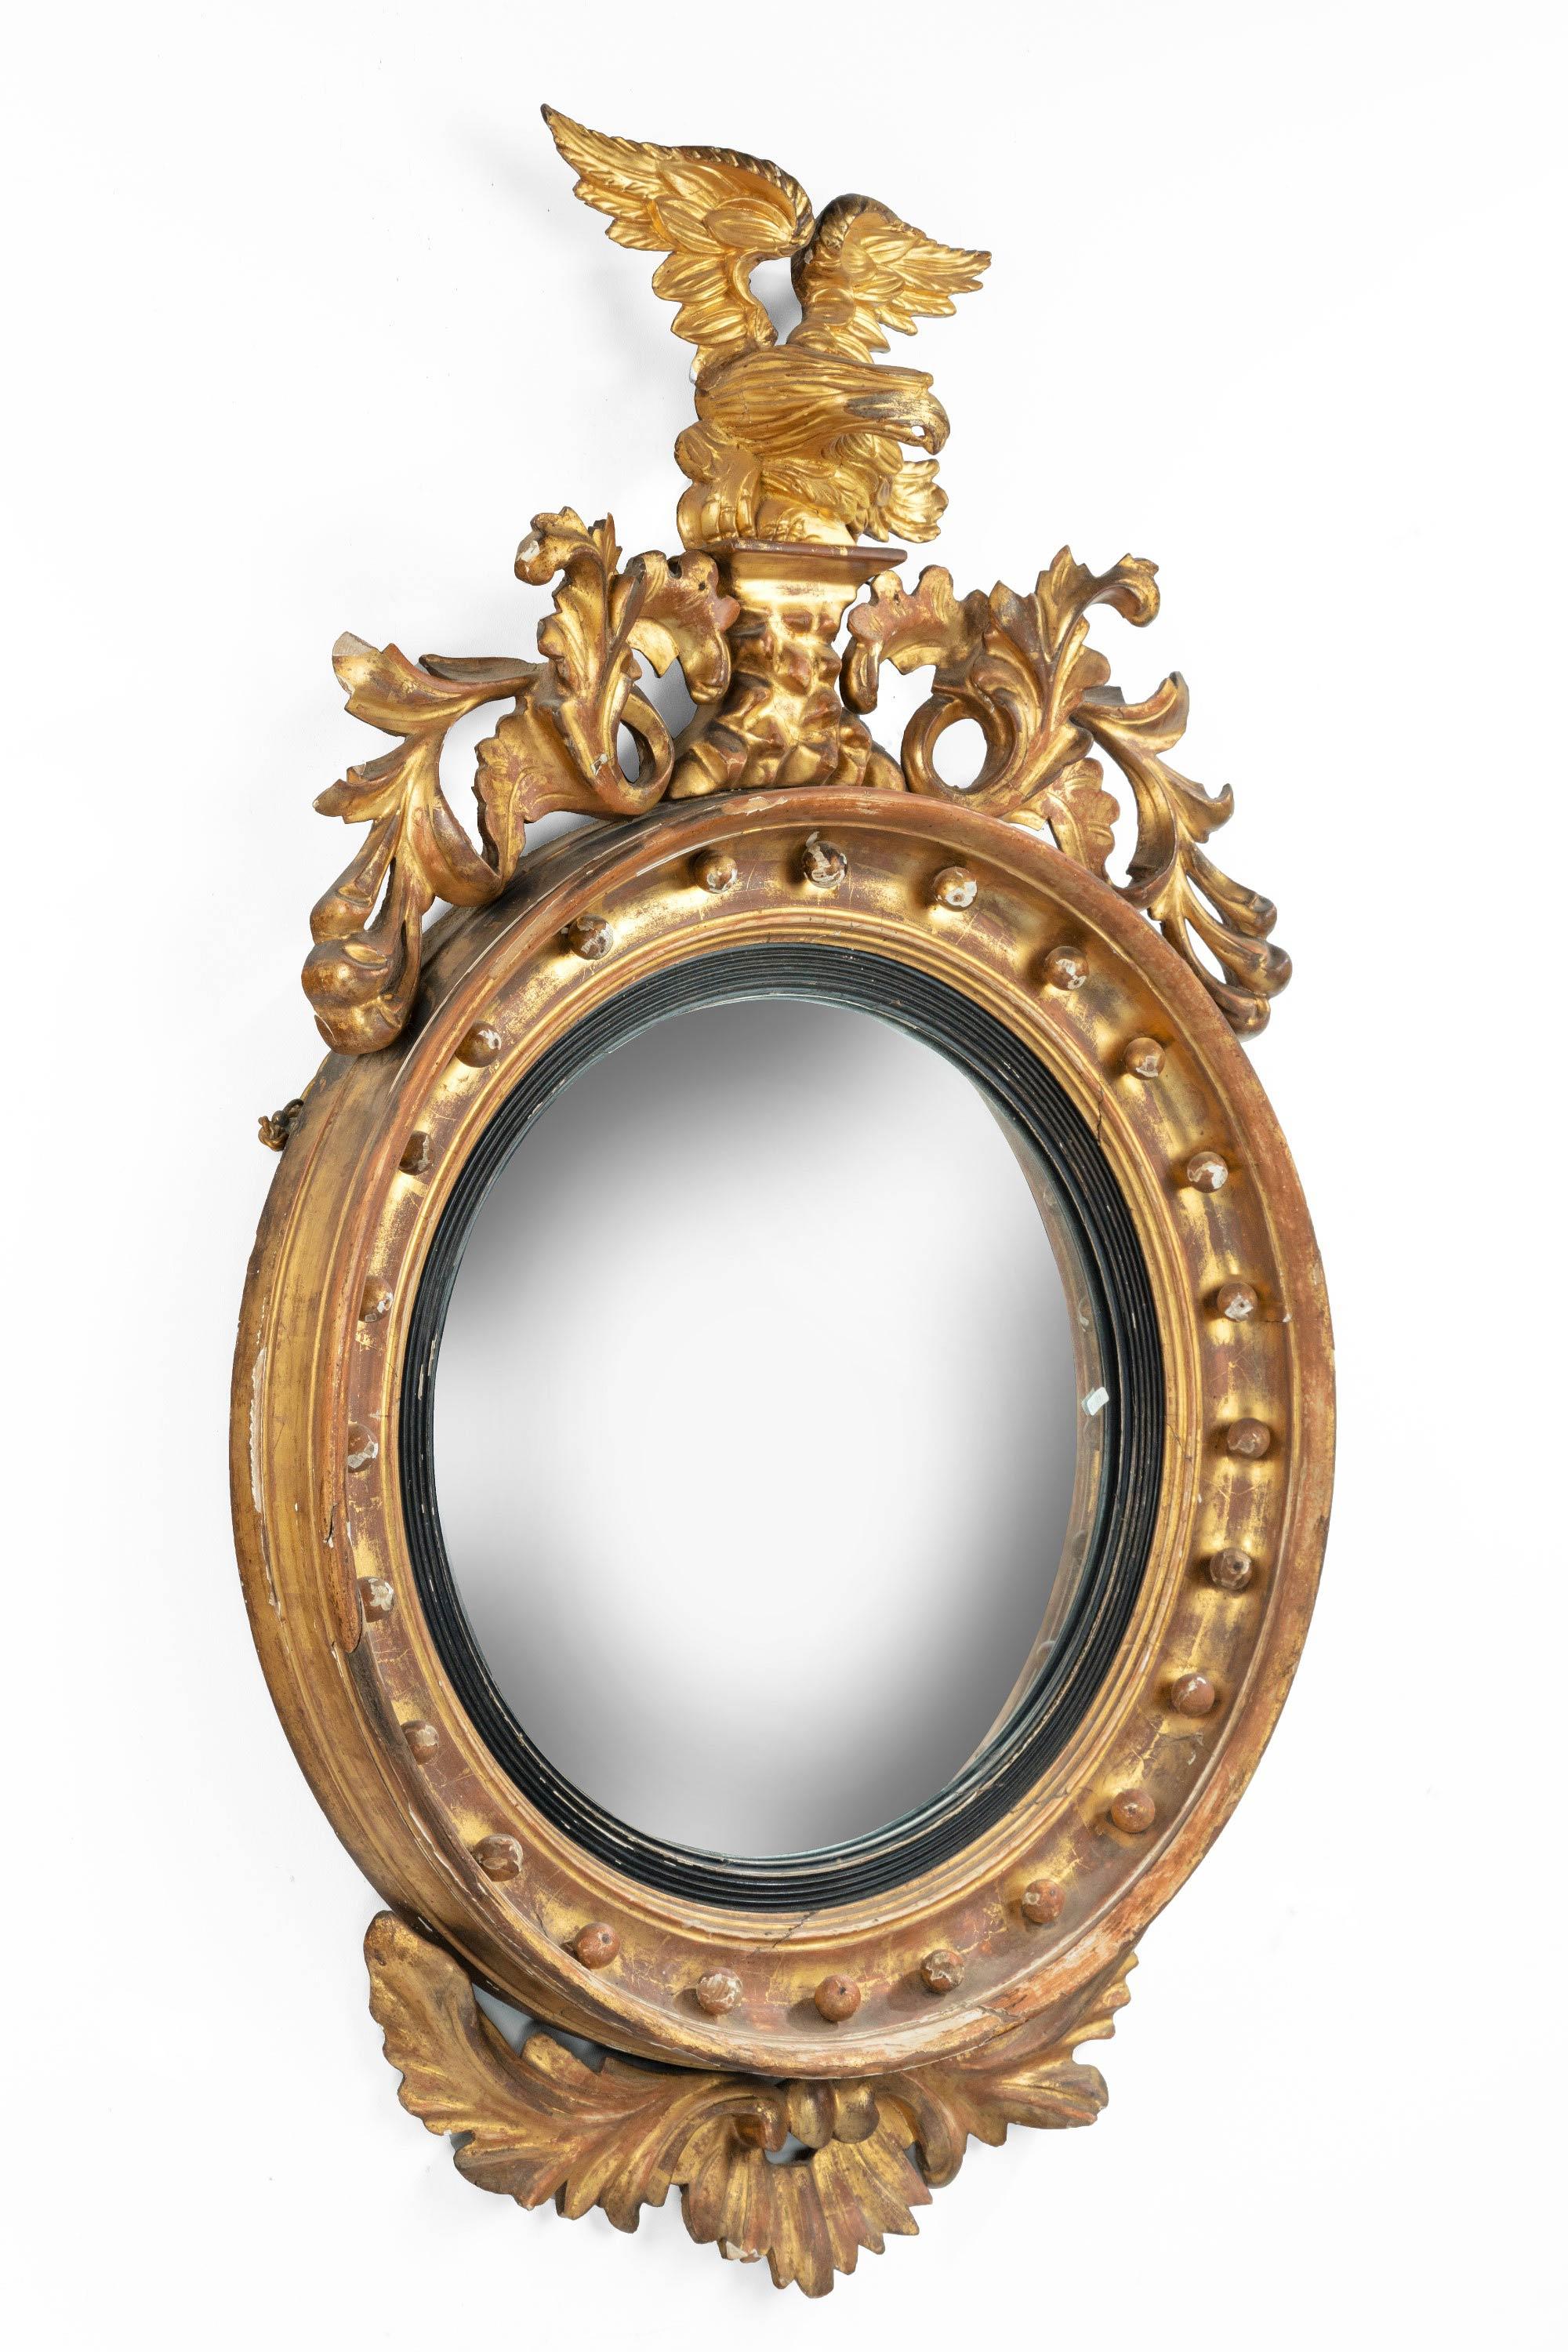 English Regency Period Convex Circular Mirror